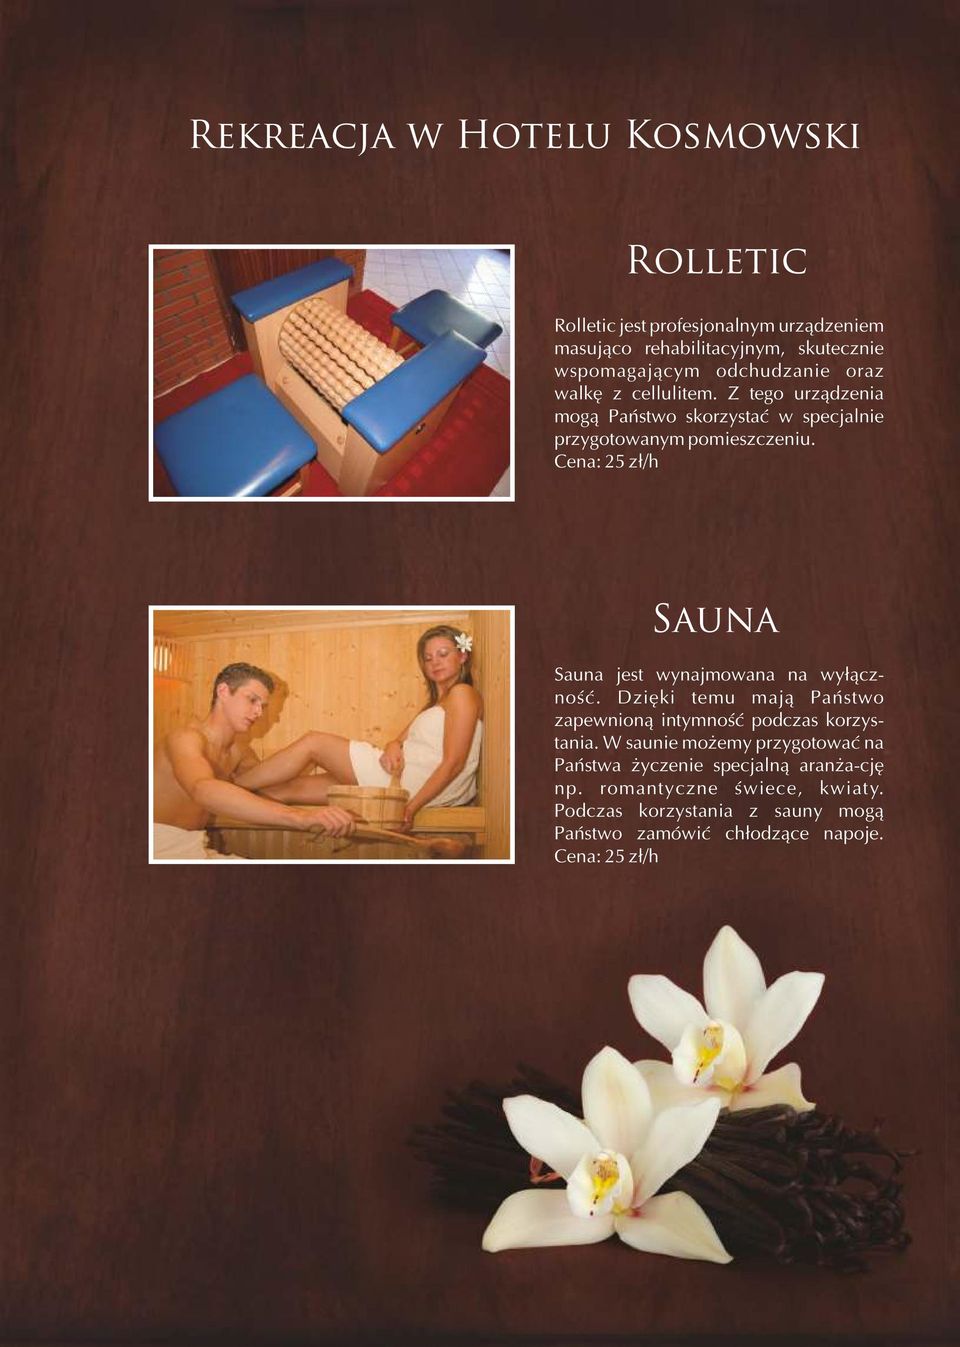 Cena: 25 zł/h Sauna Sauna jest wynajmowana na wyłączność. Dzięki temu mają Państwo zapewnioną intymność podczas korzystania.